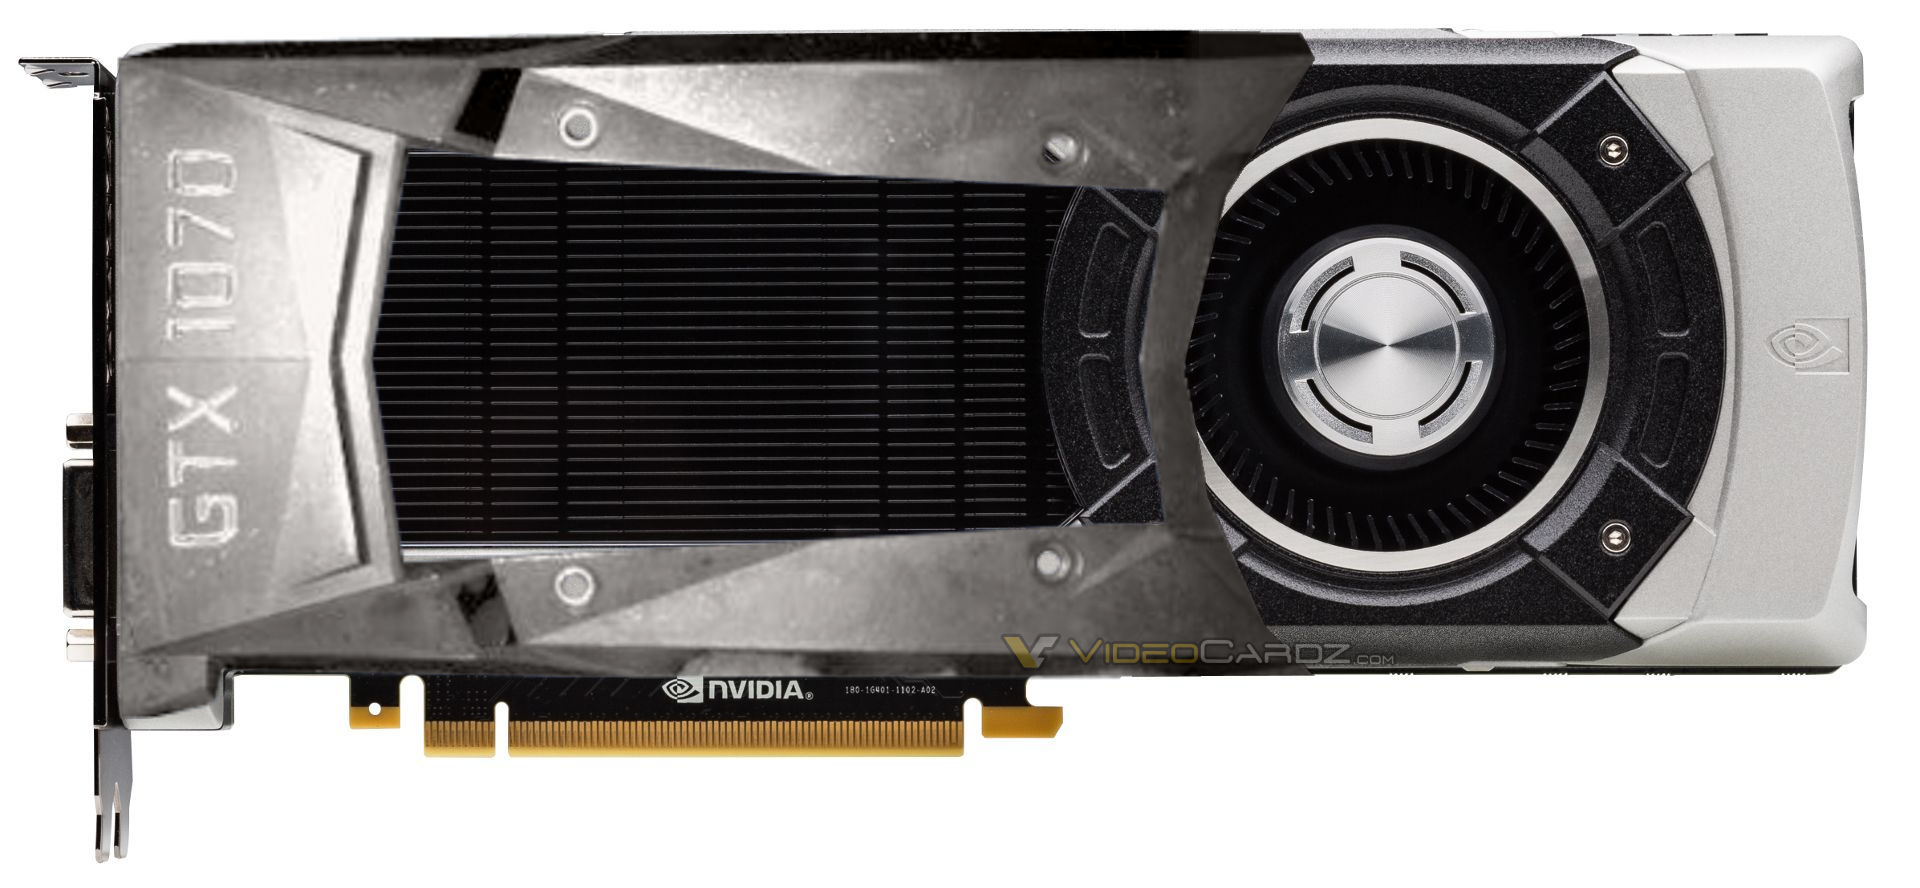 NVIDIA GeForce GTX 1080, GeForce GTX 1070 cooler shrouds pictured ...